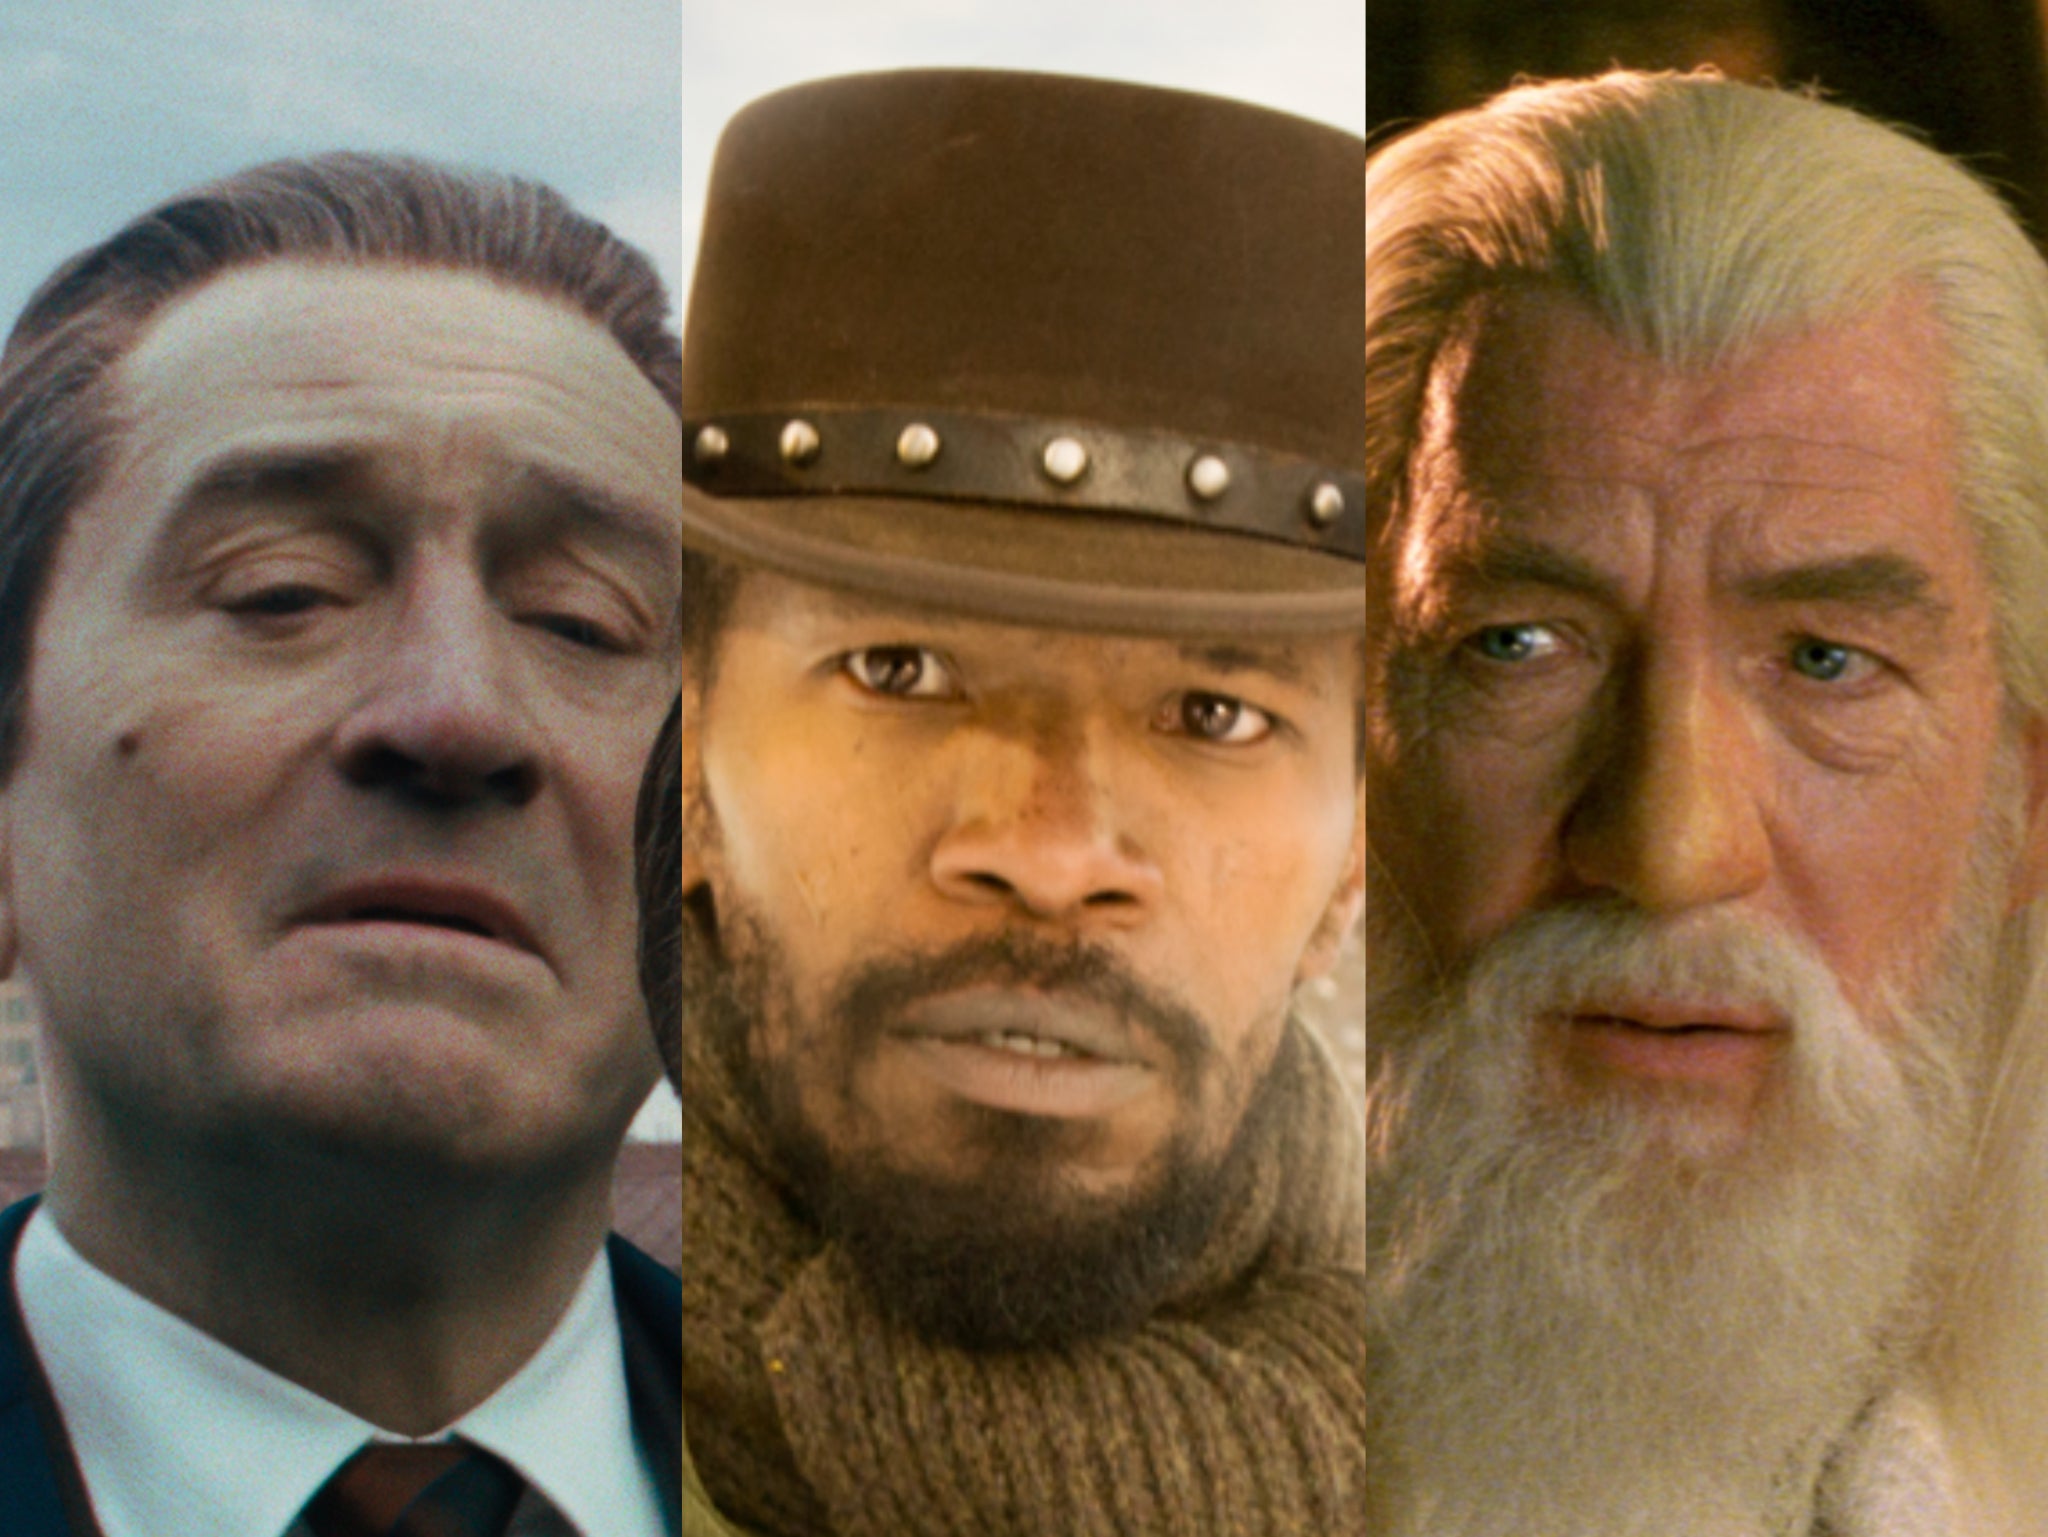 Robert De Niro in ‘The Irishman’, Jamie Foxx in ‘Django Unchained’ and Ian McKellen in ‘Lord of the Rings’